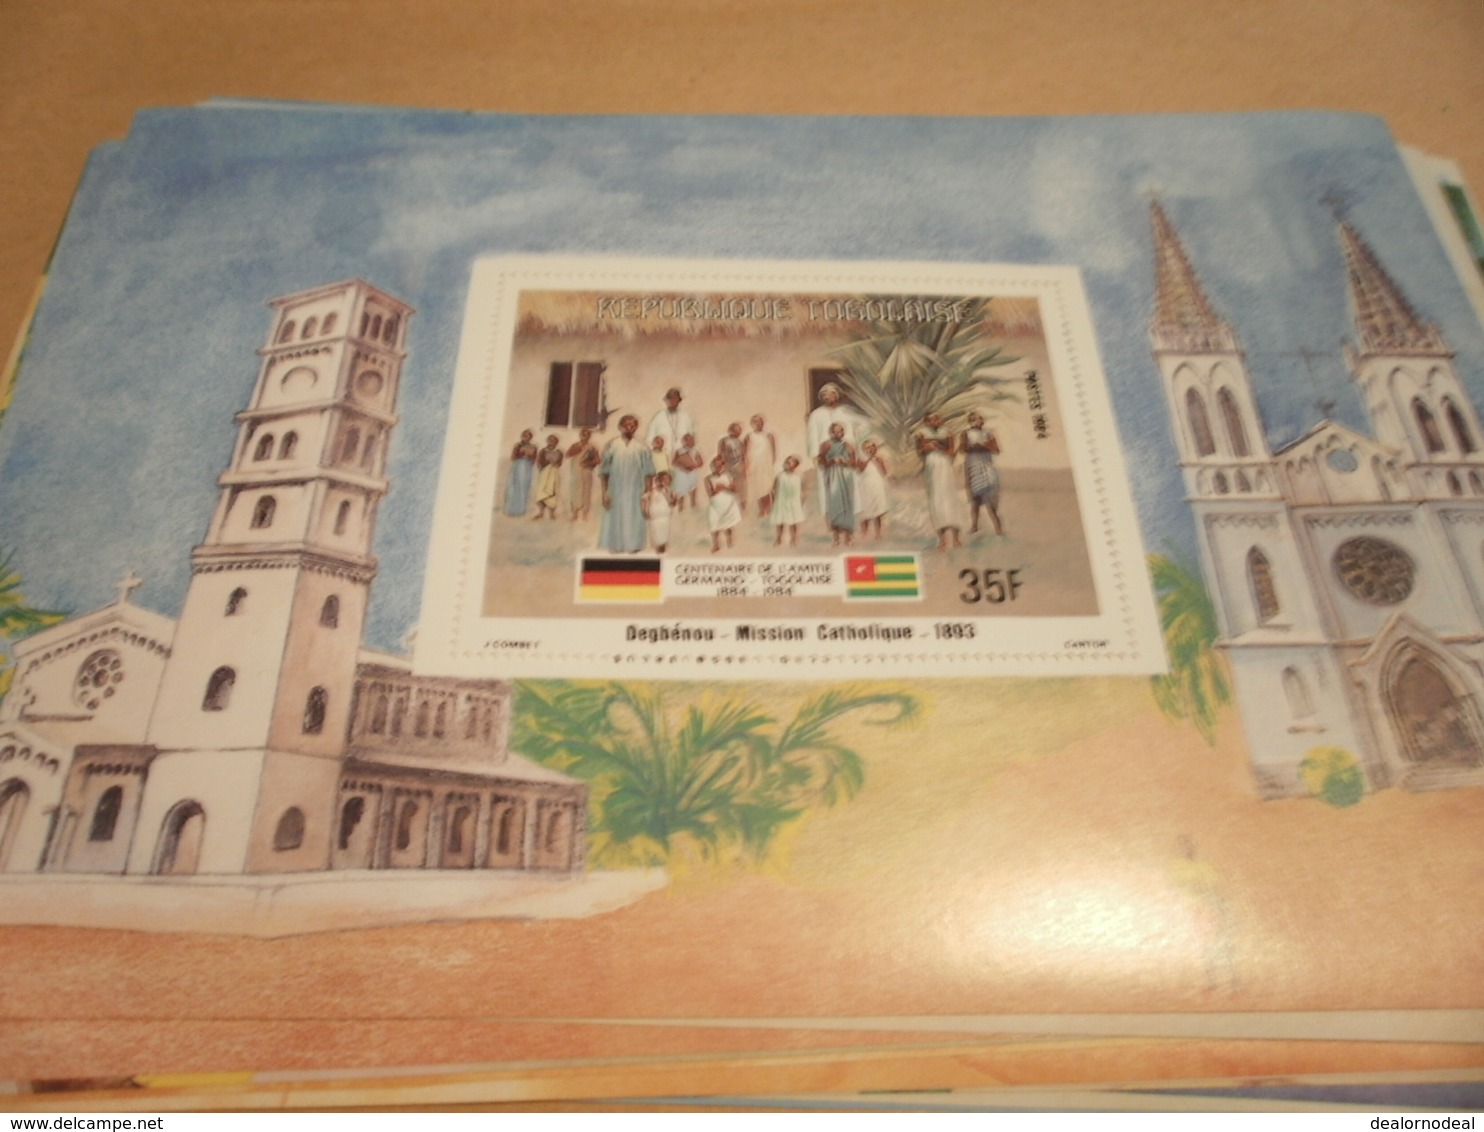 Miniature Sheet 1984 Togolaise Togo German Friendship Catholic Mission 1893 - Togo (1960-...)